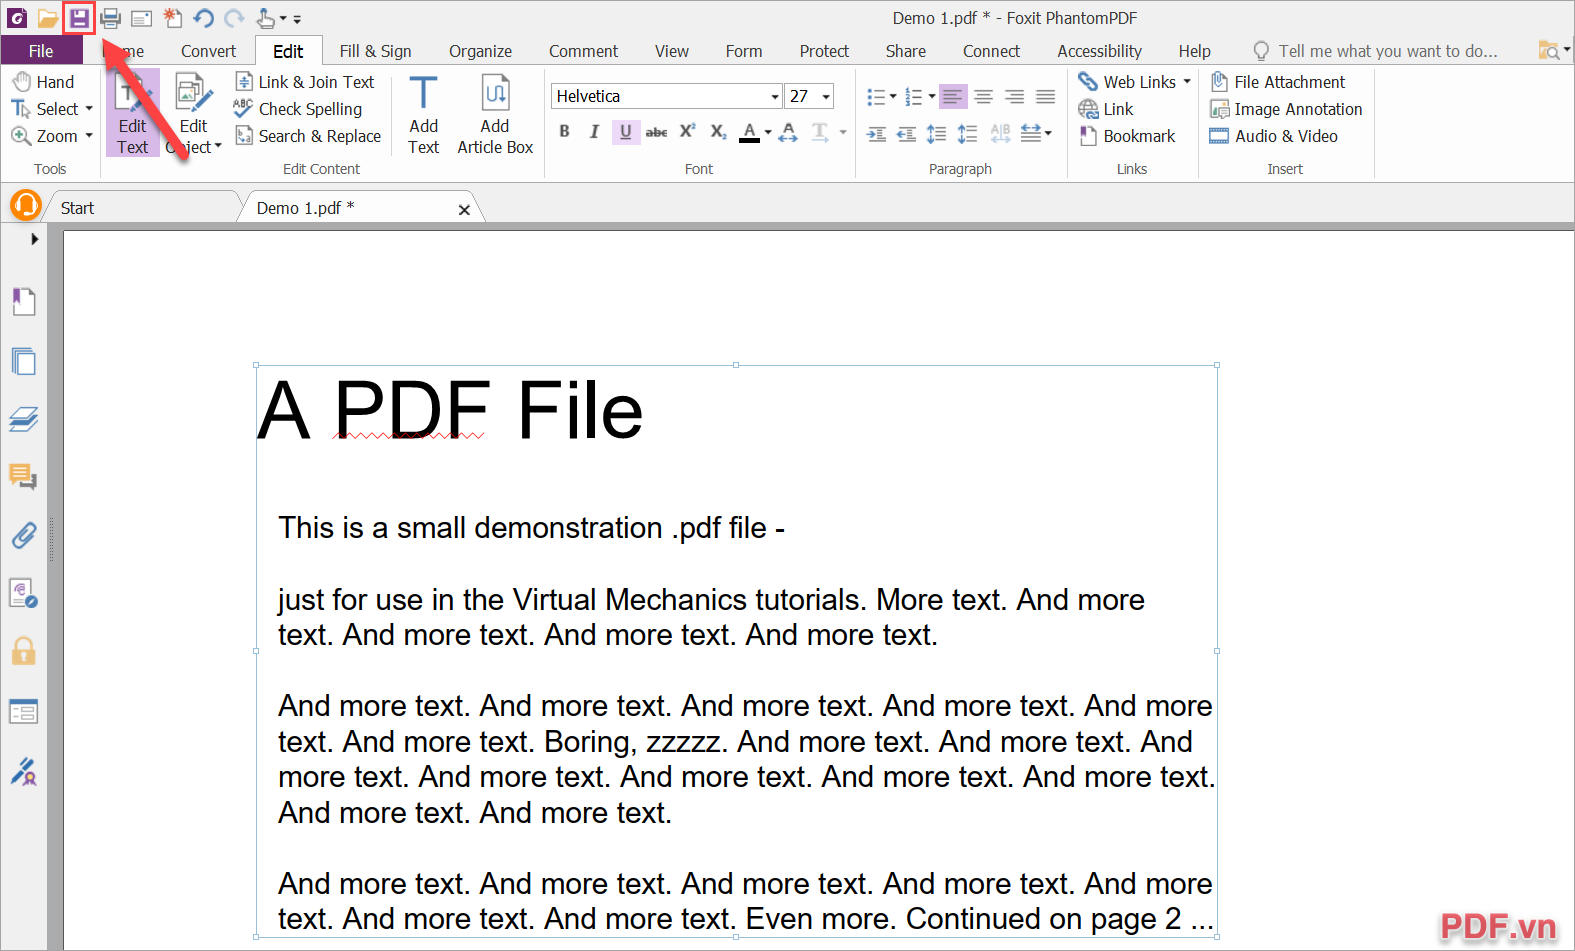 Chọn Save để lưu lại file PDF trên máy tính